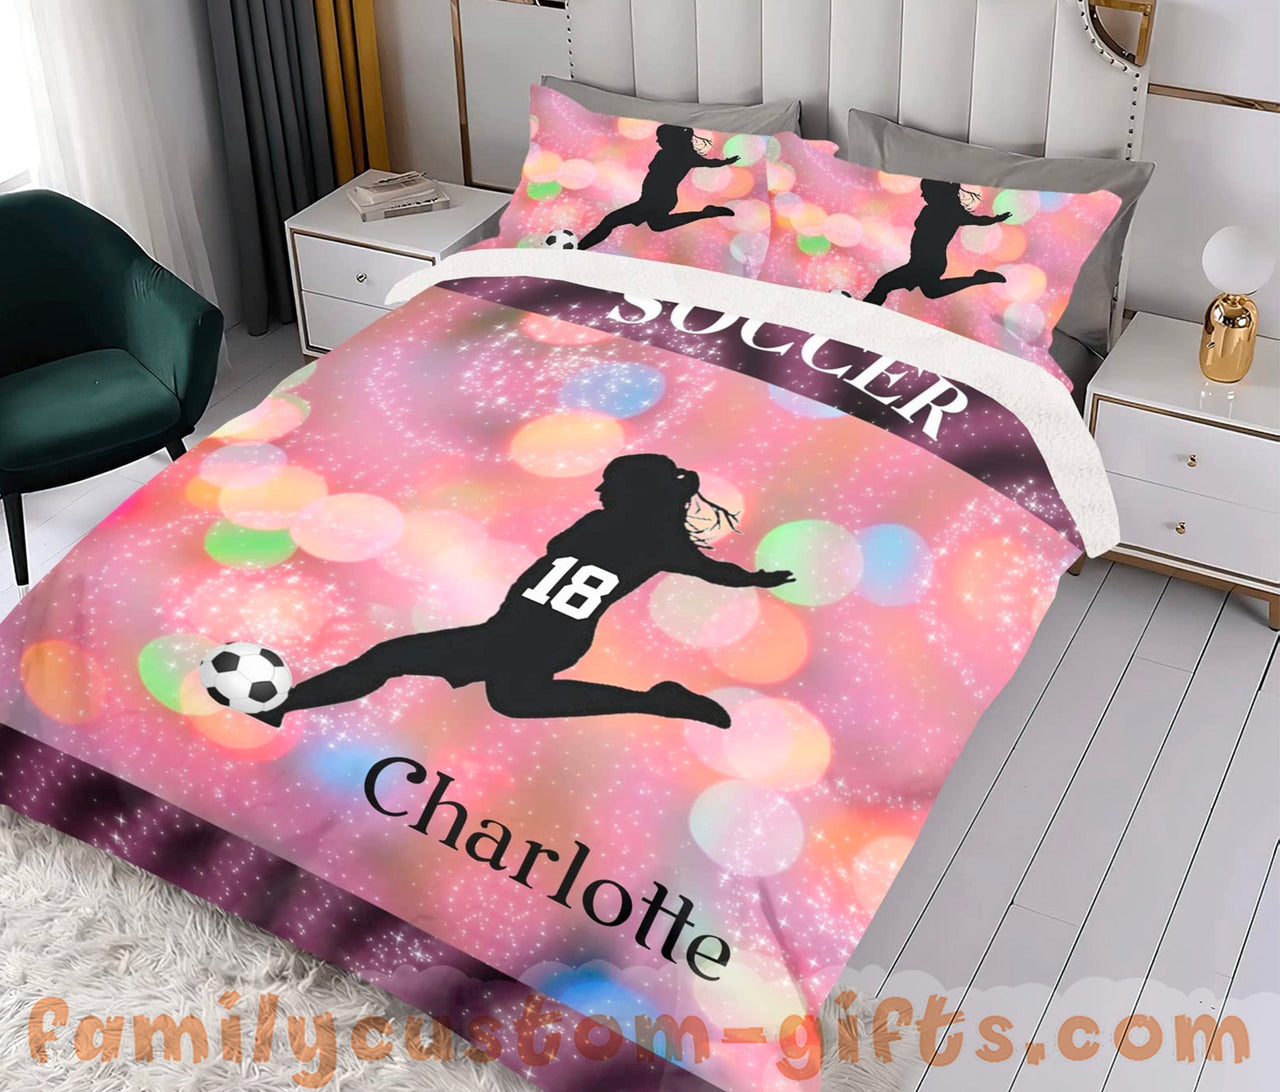 Custom Quilt Sets Soccer Girl Premium Quilt Bedding for Boys Girls Men Women